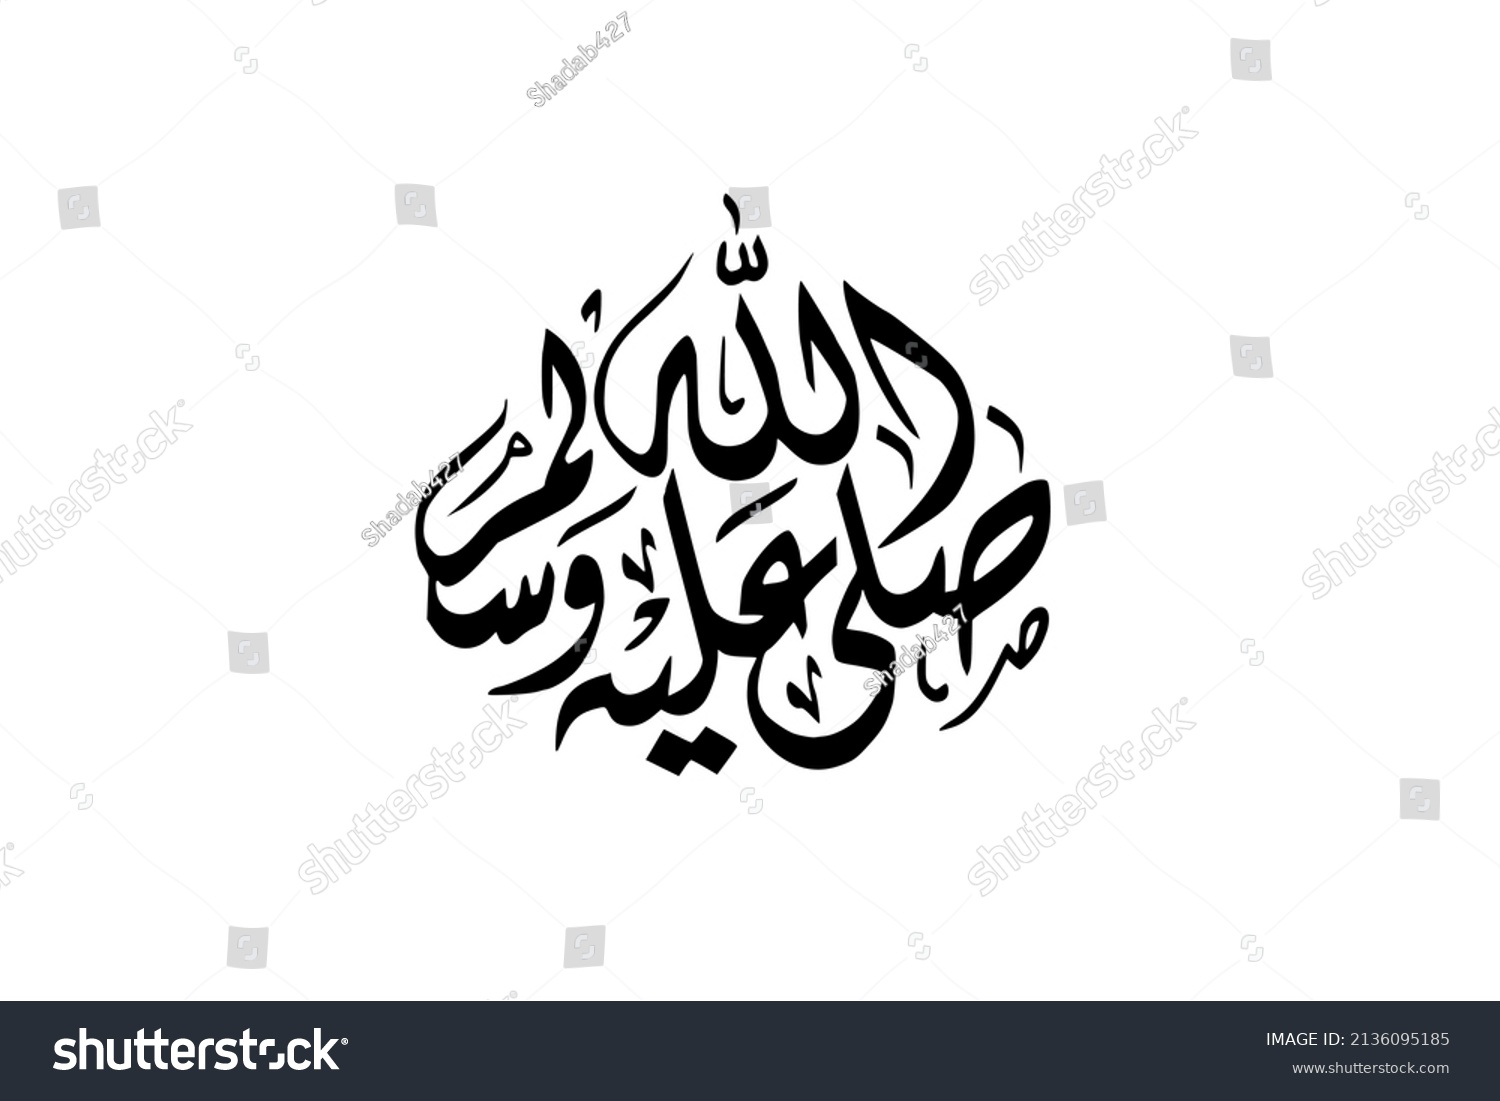 Sallallahu alaihi wasallam symbol